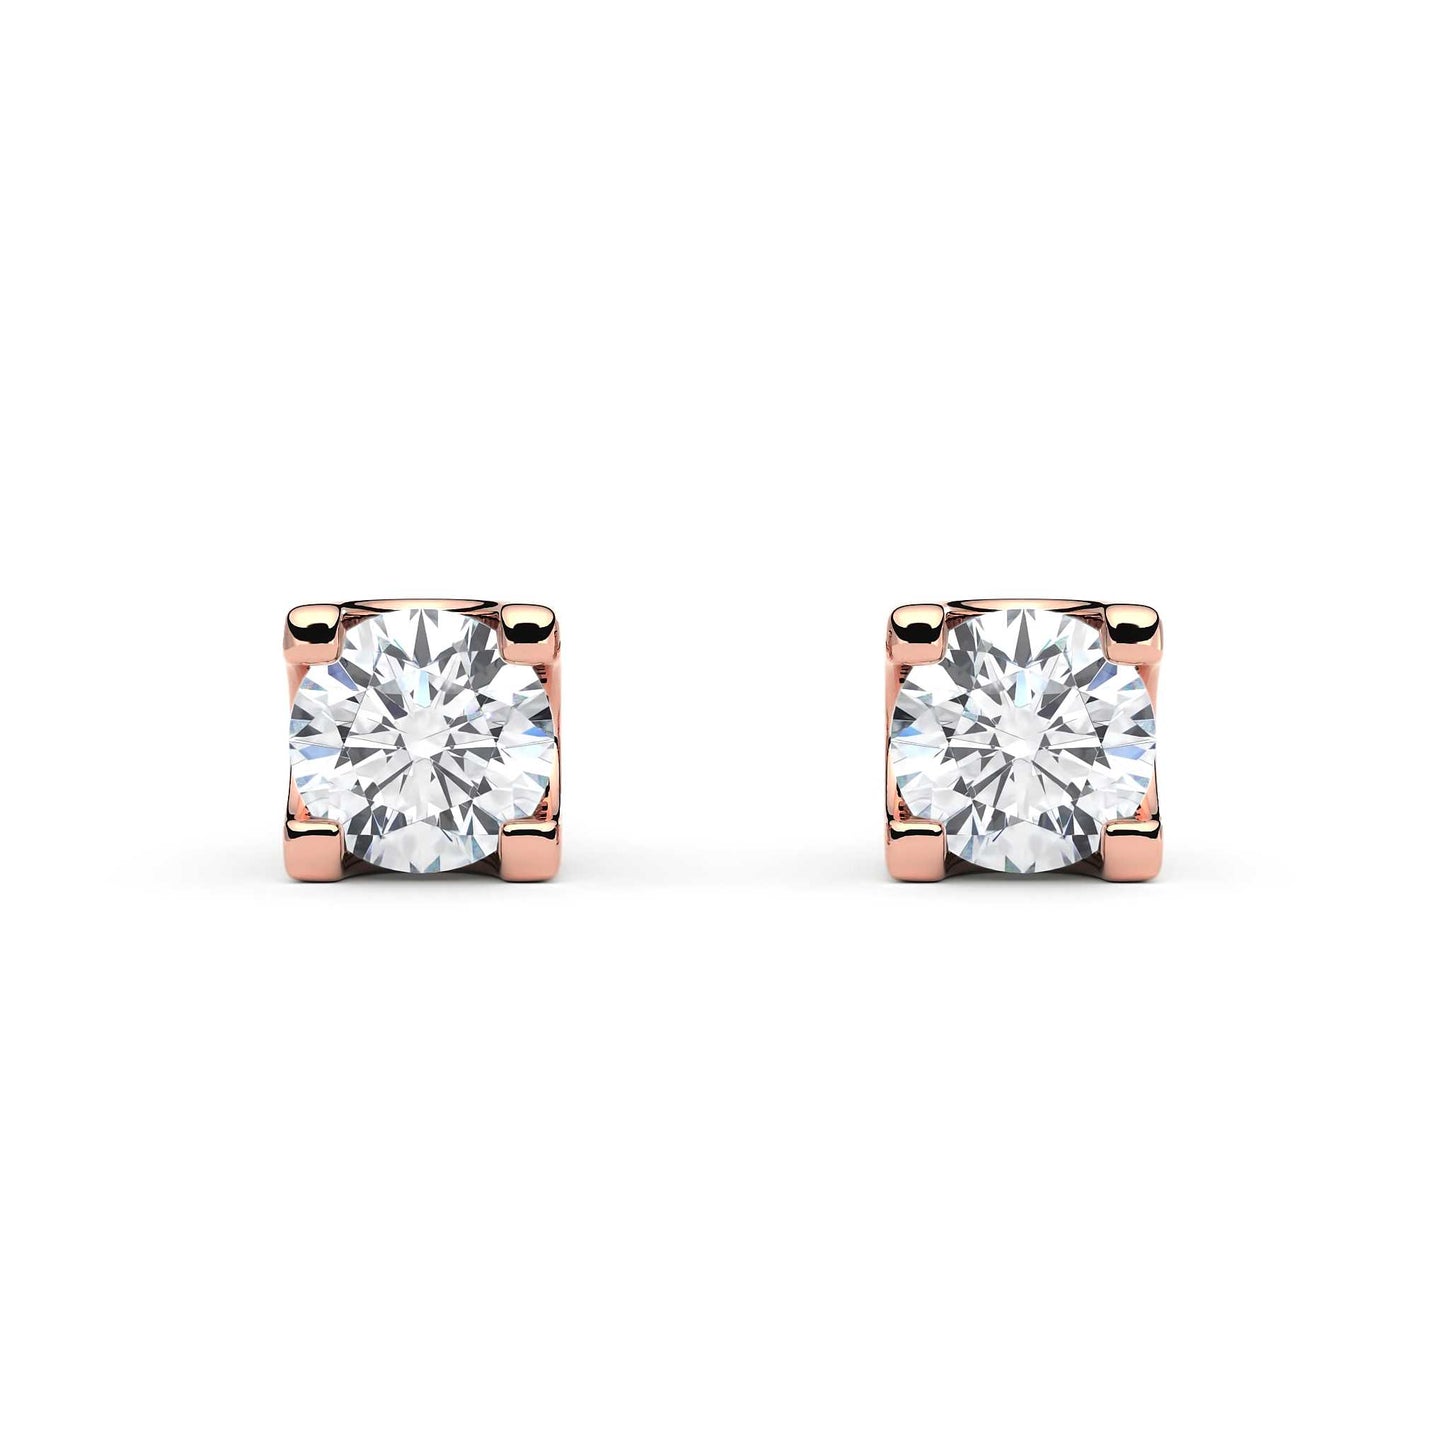 Suokko Timanttikorut -timanttikorvakorut rosakultaa, jossa istutettuna 2 timanttia. Tuotekoodi KE05621A2